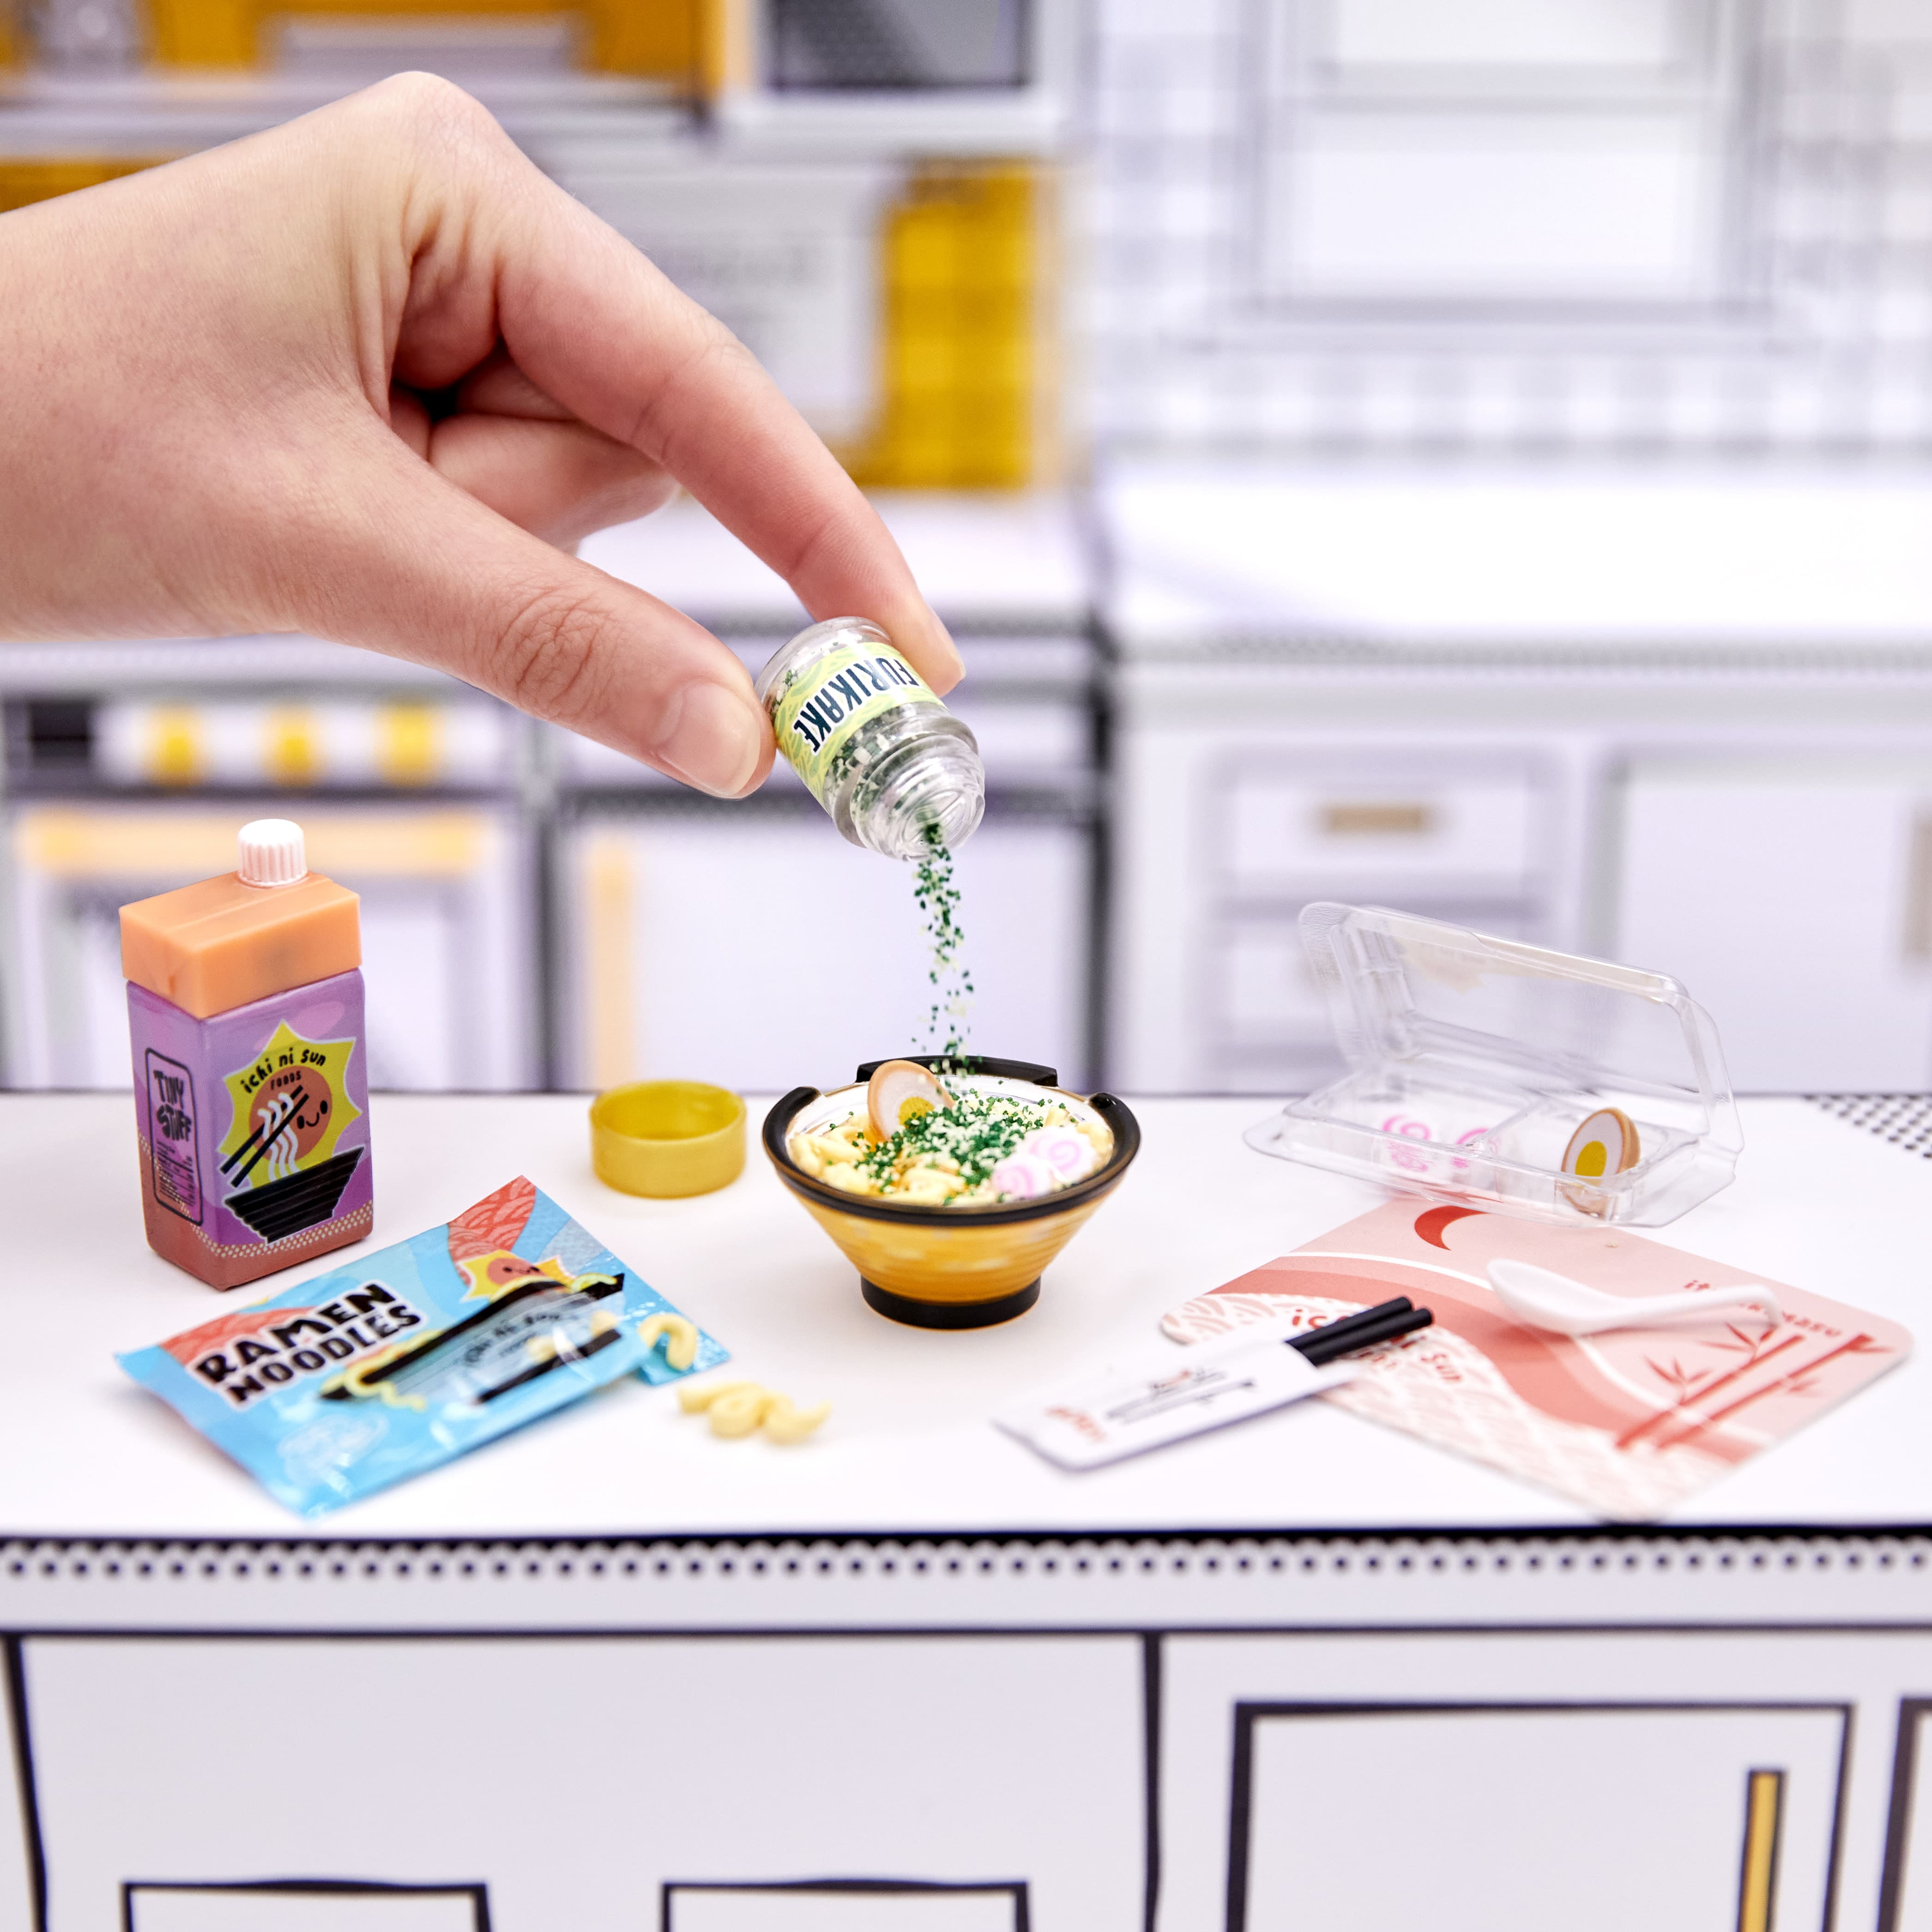 MGA's Miniverse - Make It Mini Food Cafe Minis – L.O.L. Surprise